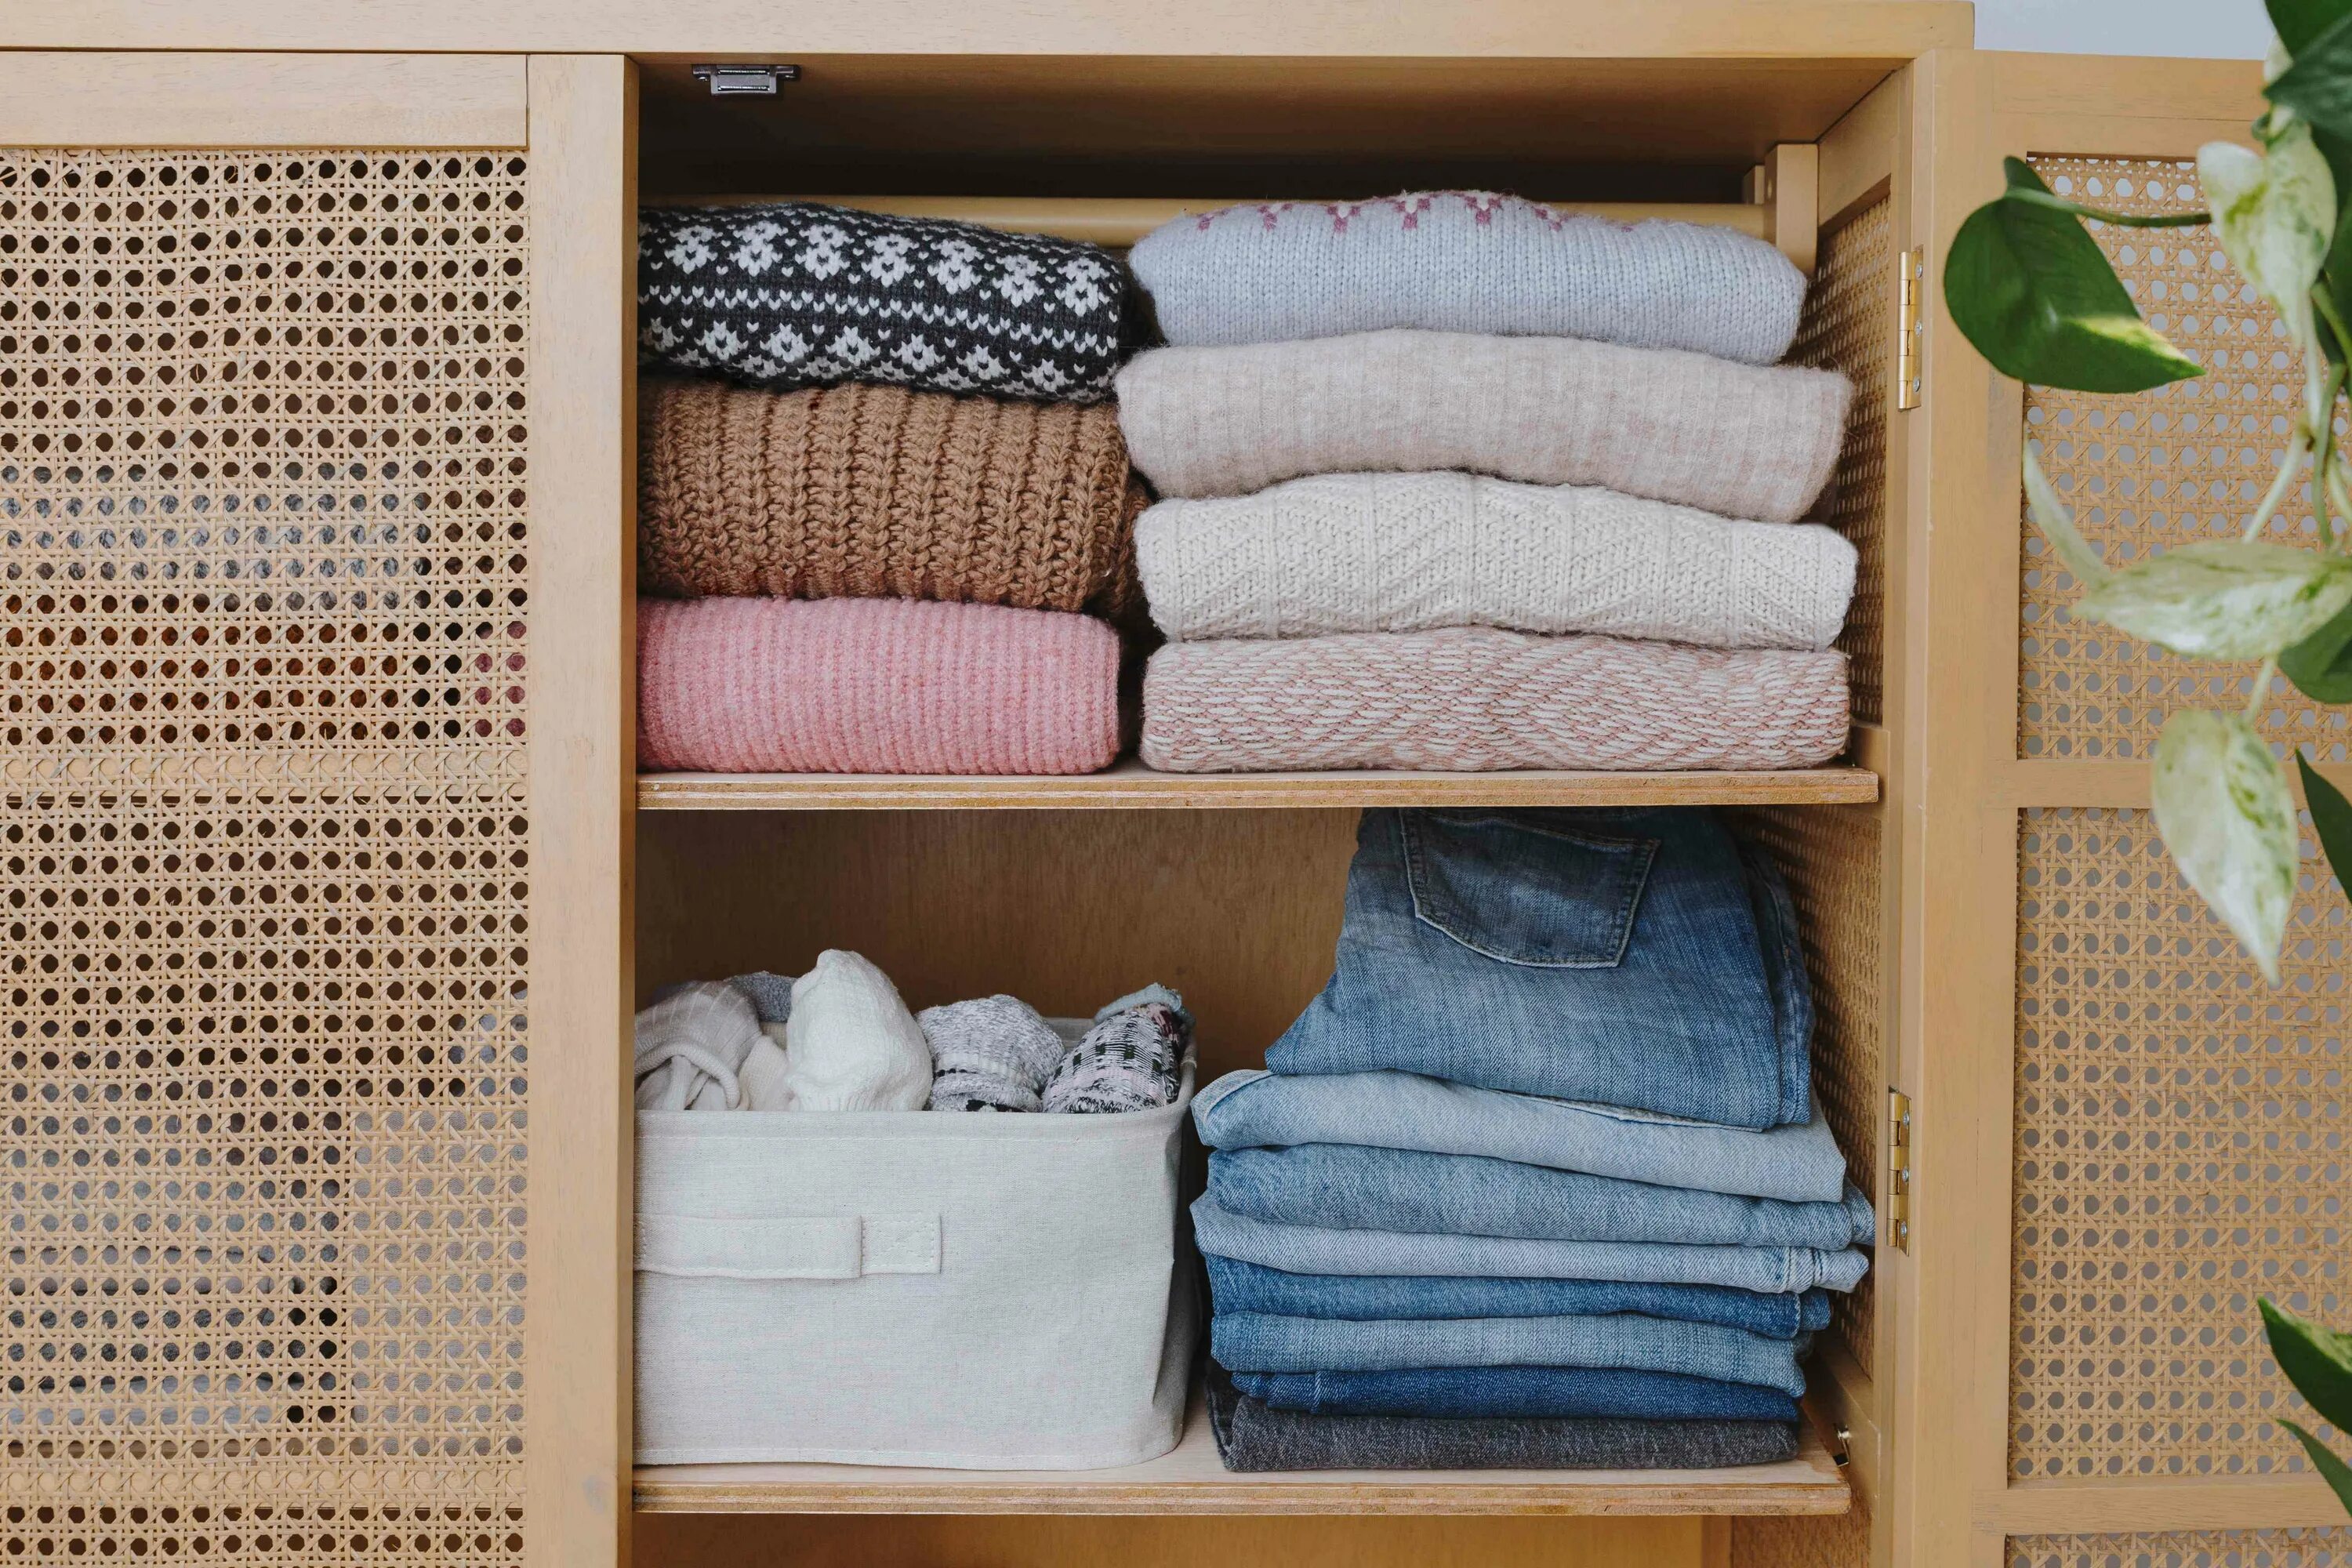 Хранение вещей которые уже надевал. Одежда на полках в шкафу свитера. Что положить в шкаф для приятного запаха. Как можно хранить вещи которые уже одевали.